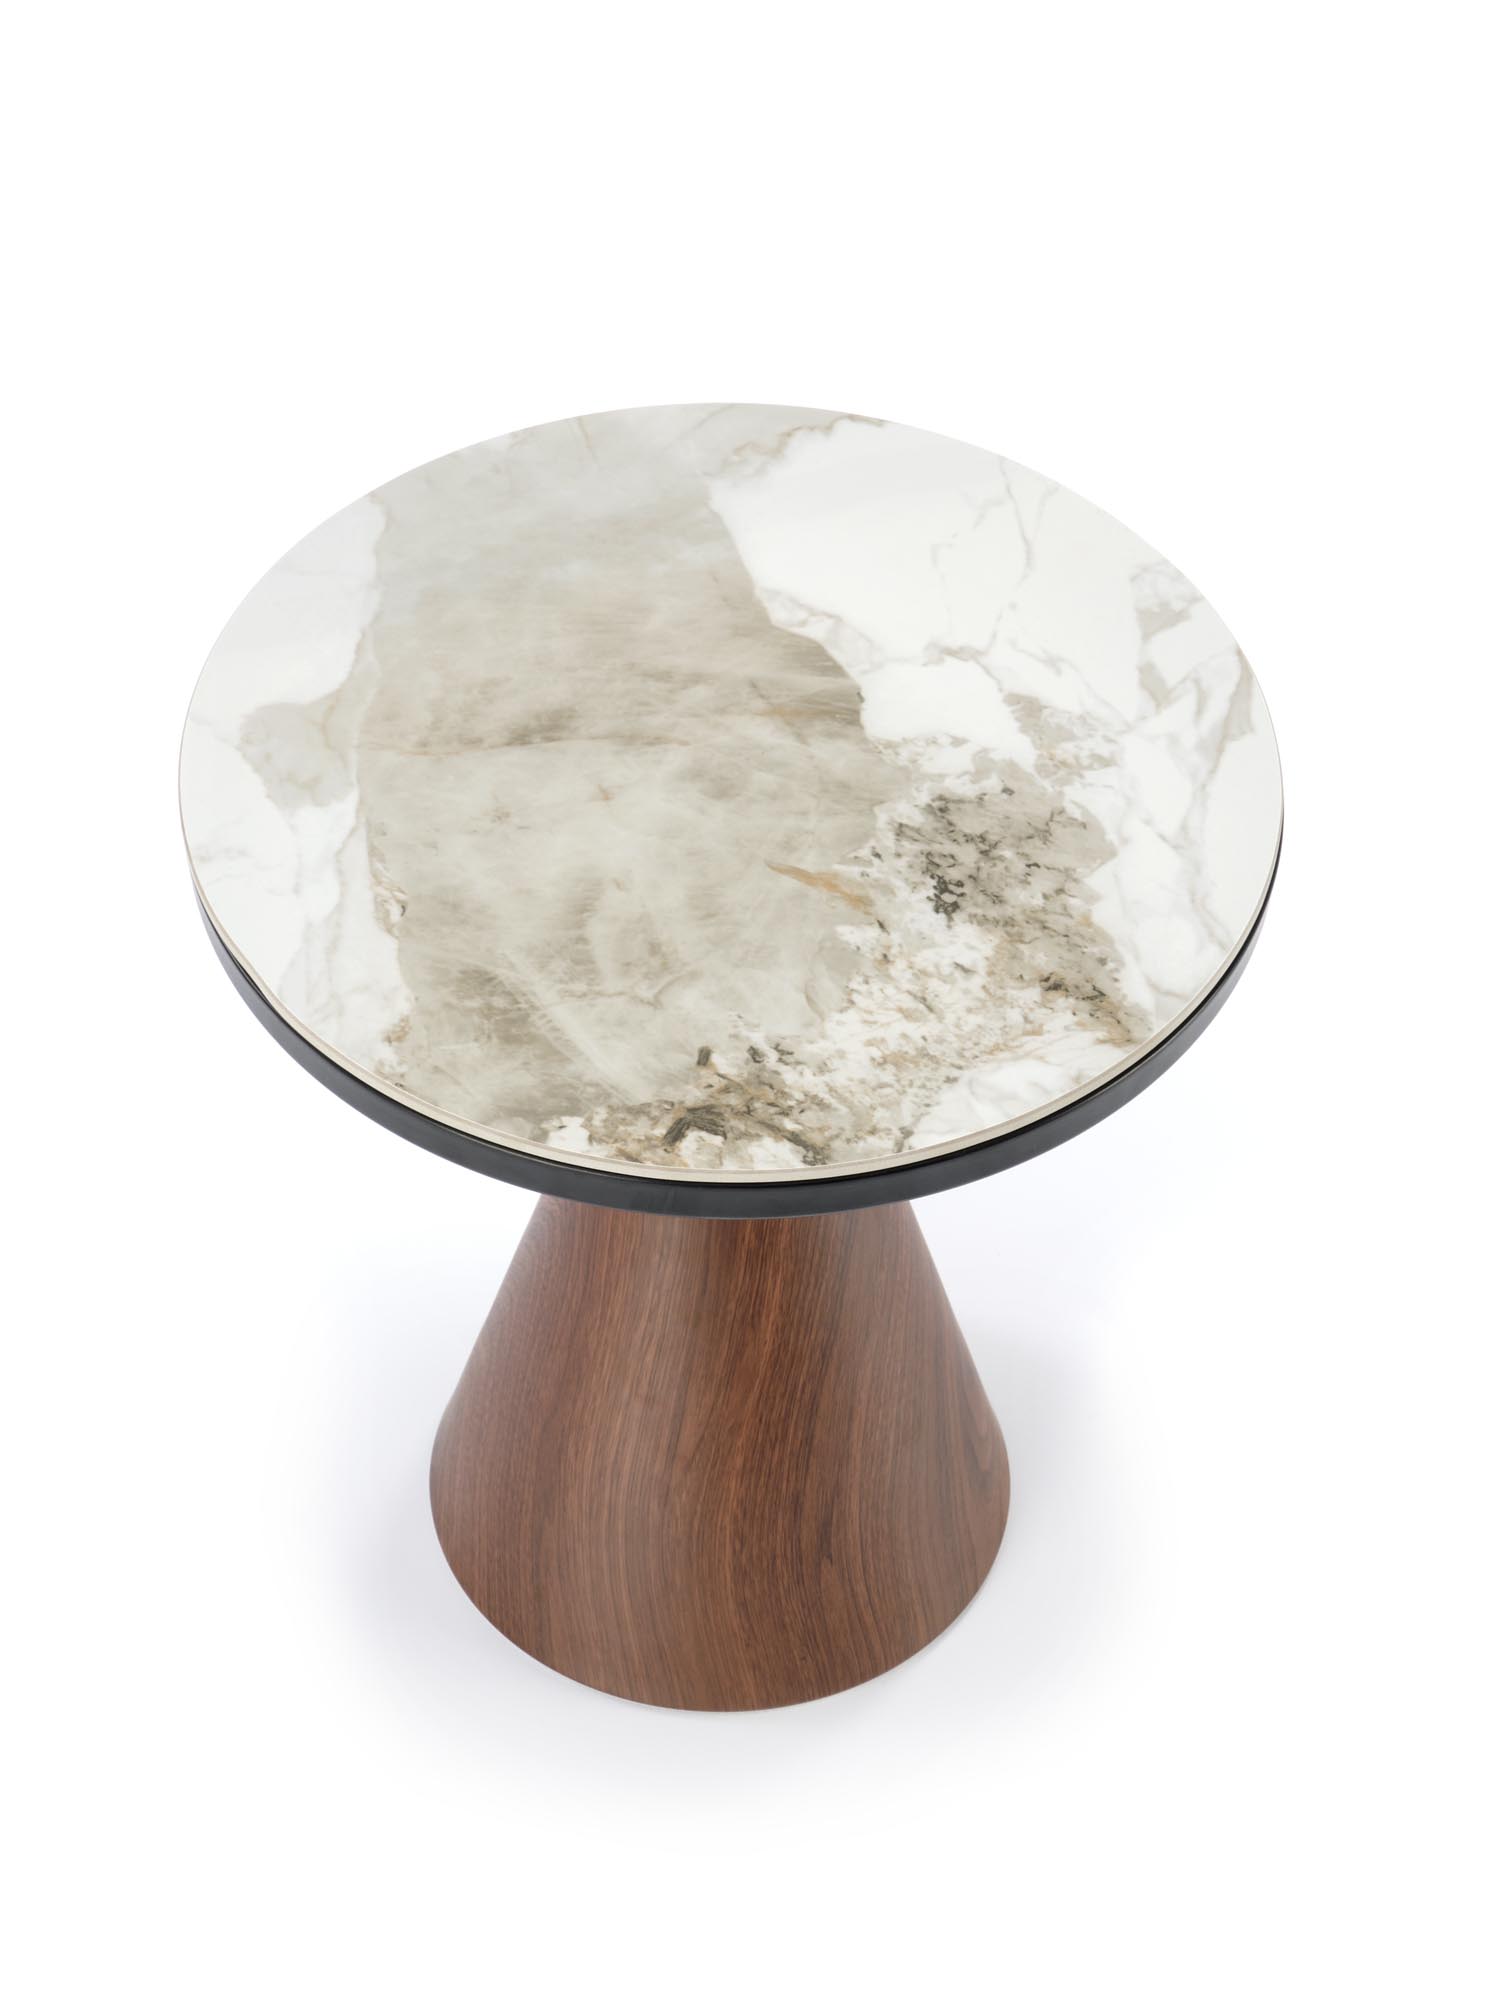 Genesis S dohányzóasztal - fehér márvány / dió / arany stolek kawowy genesis s - Bílý mramor / ořechový / Žlutý